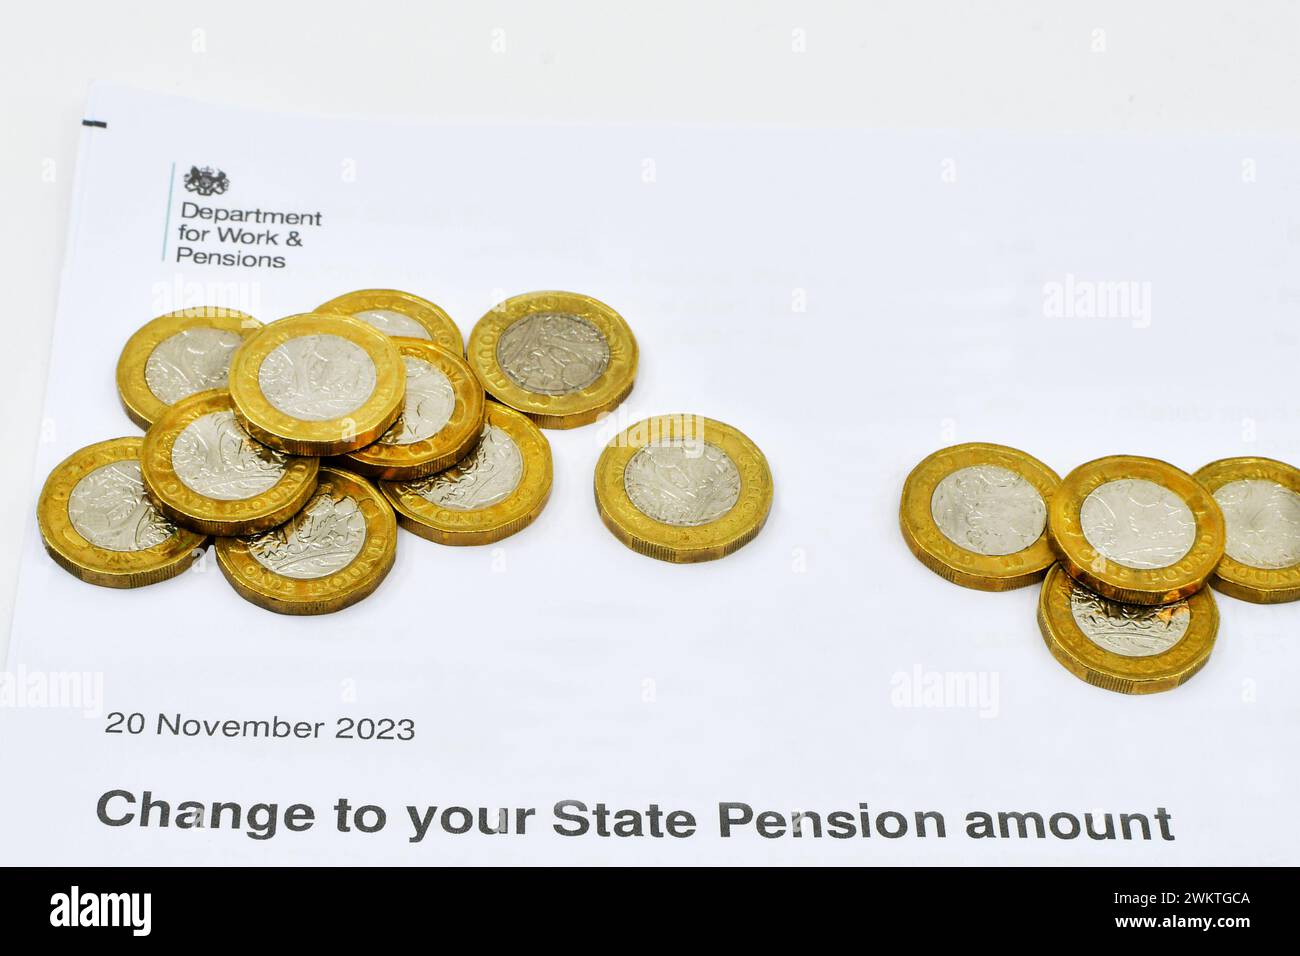 Cardiff, Wales - 1. Januar 2024: Britische Pfund-Münzen auf einem Brief des Department for Work and Pensions über eine Änderung der staatlichen Pension Stockfoto